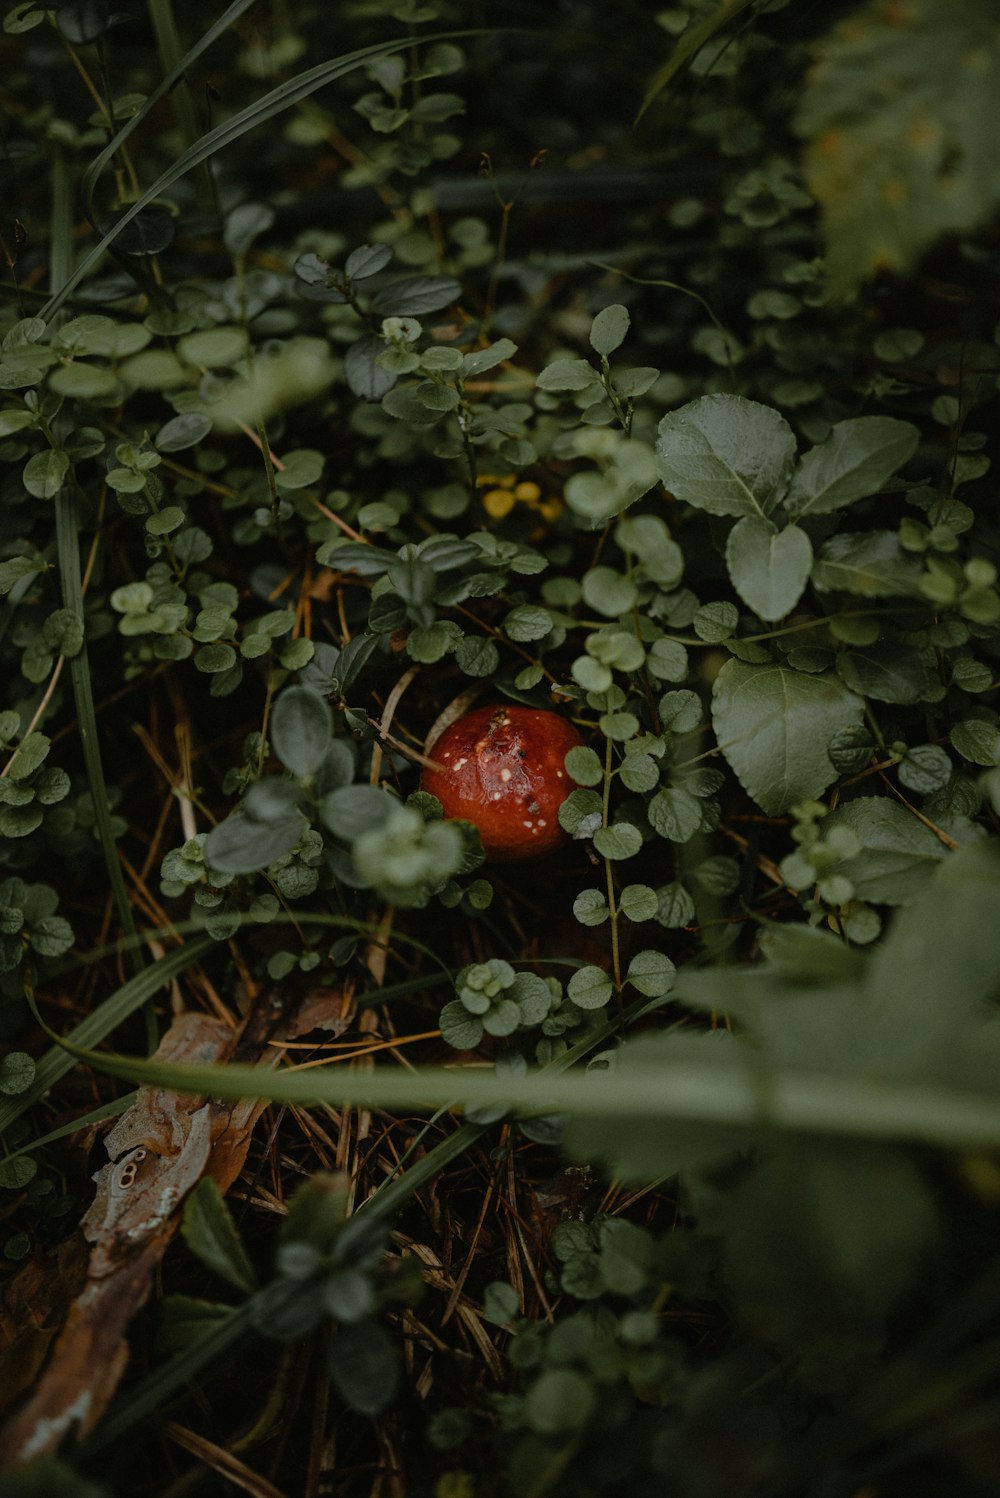 무성한 녹색 들판 위에 앉아 있는 붉은 버섯